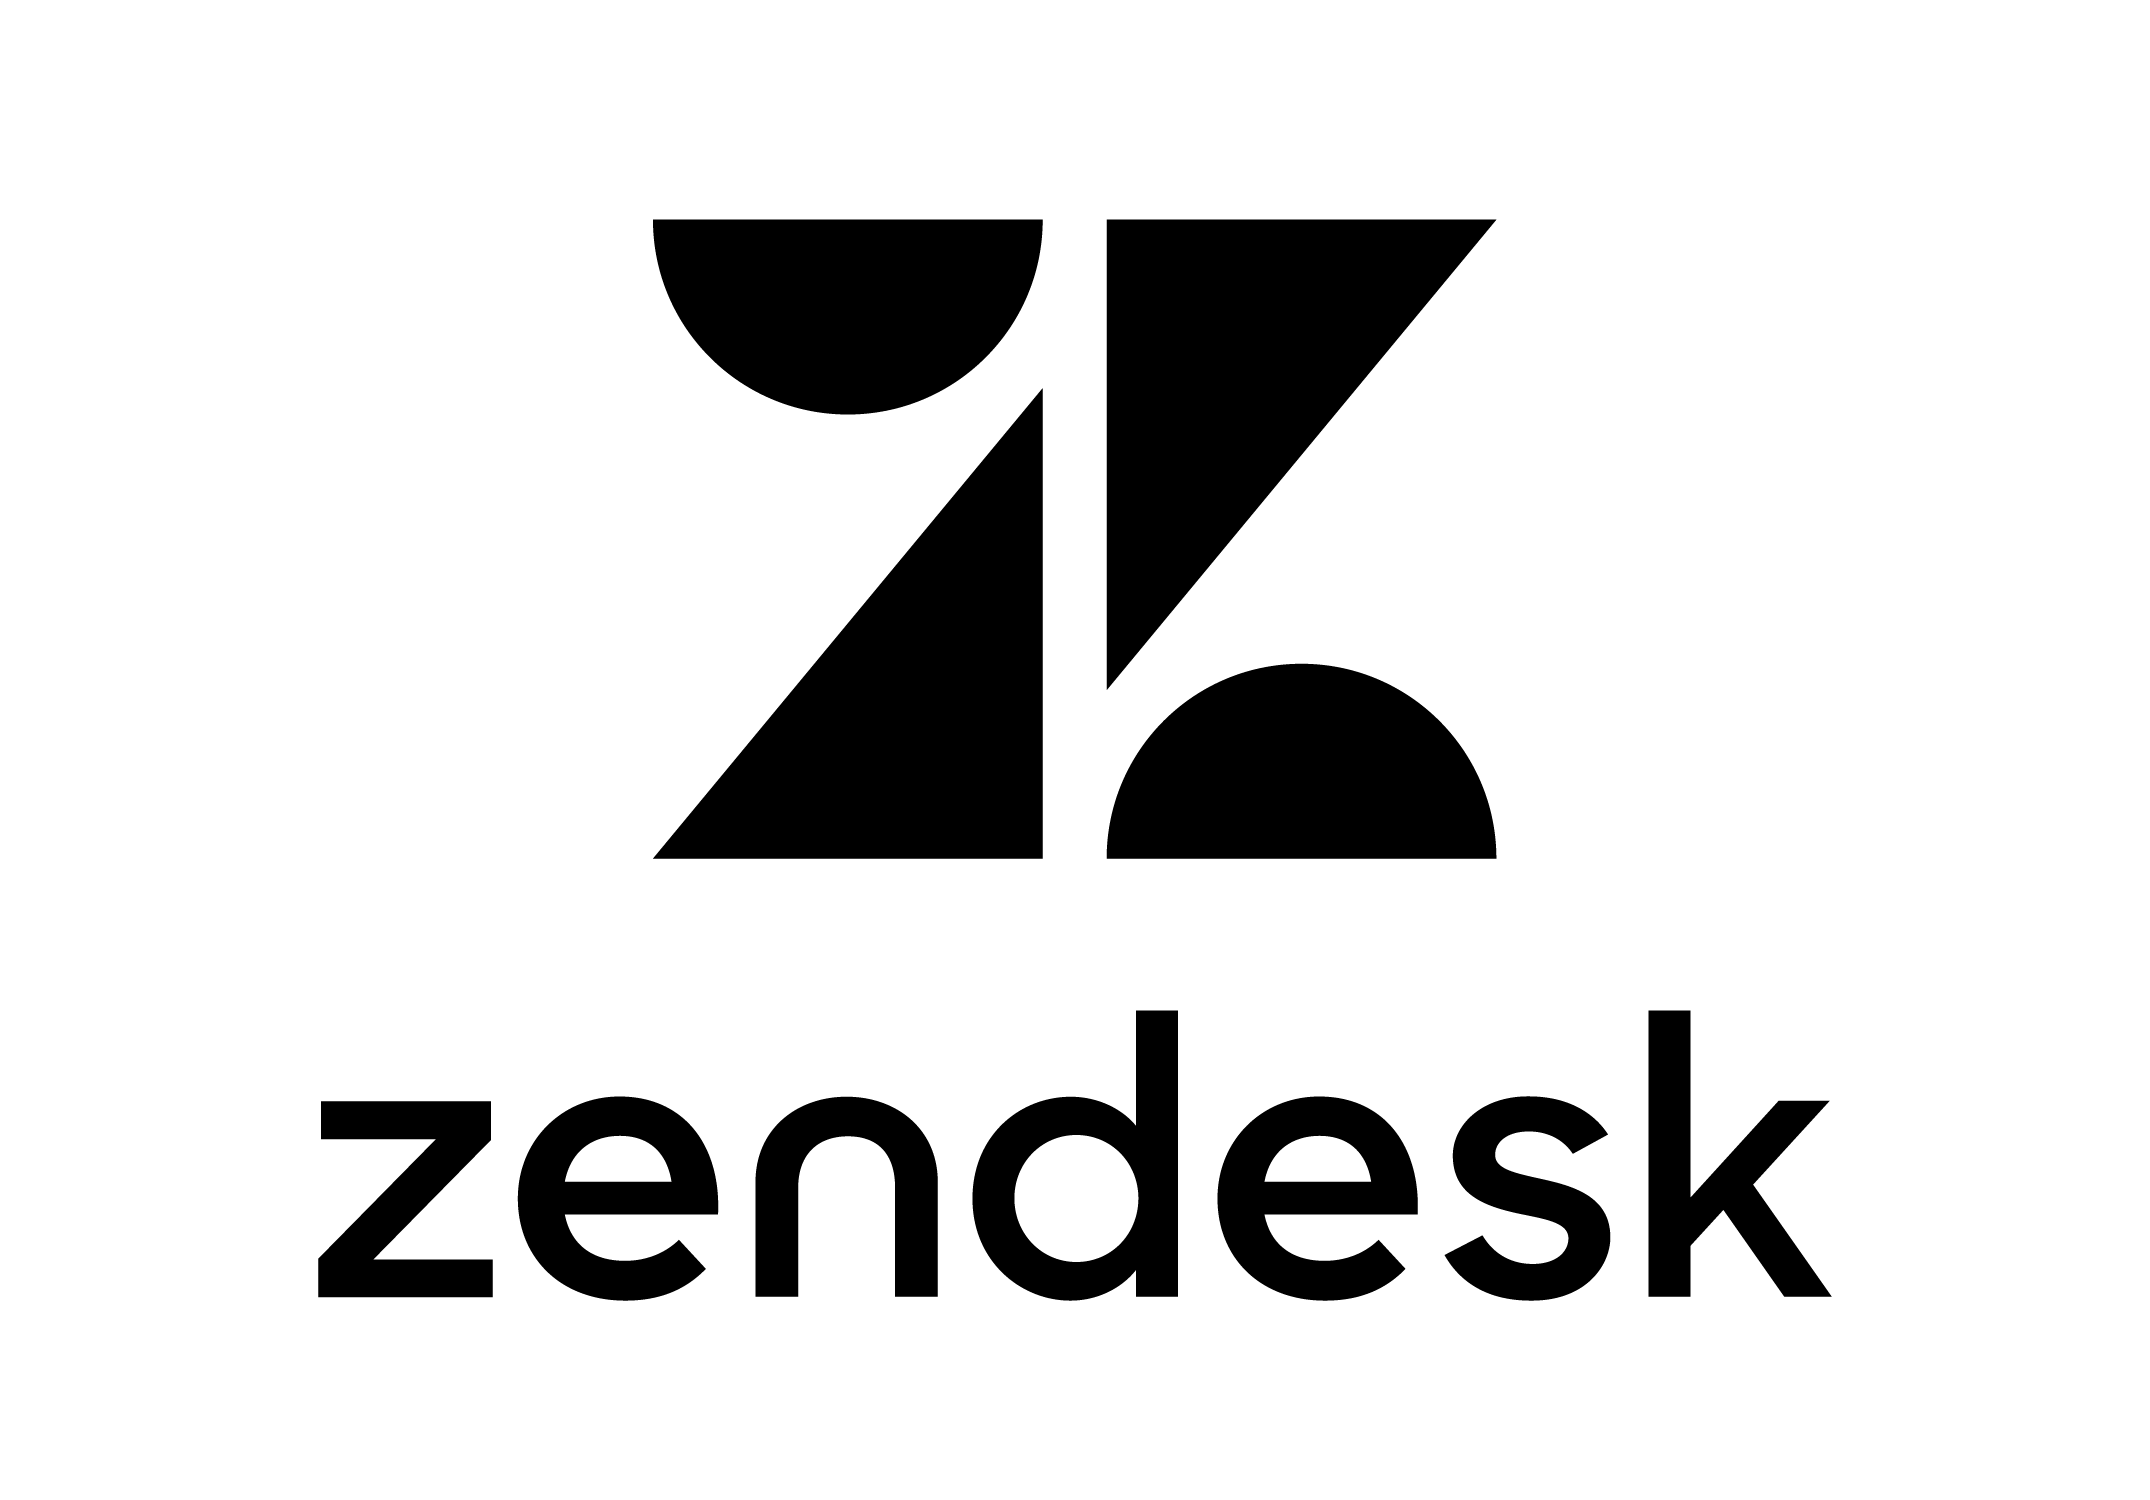 Zendesk Word Marks